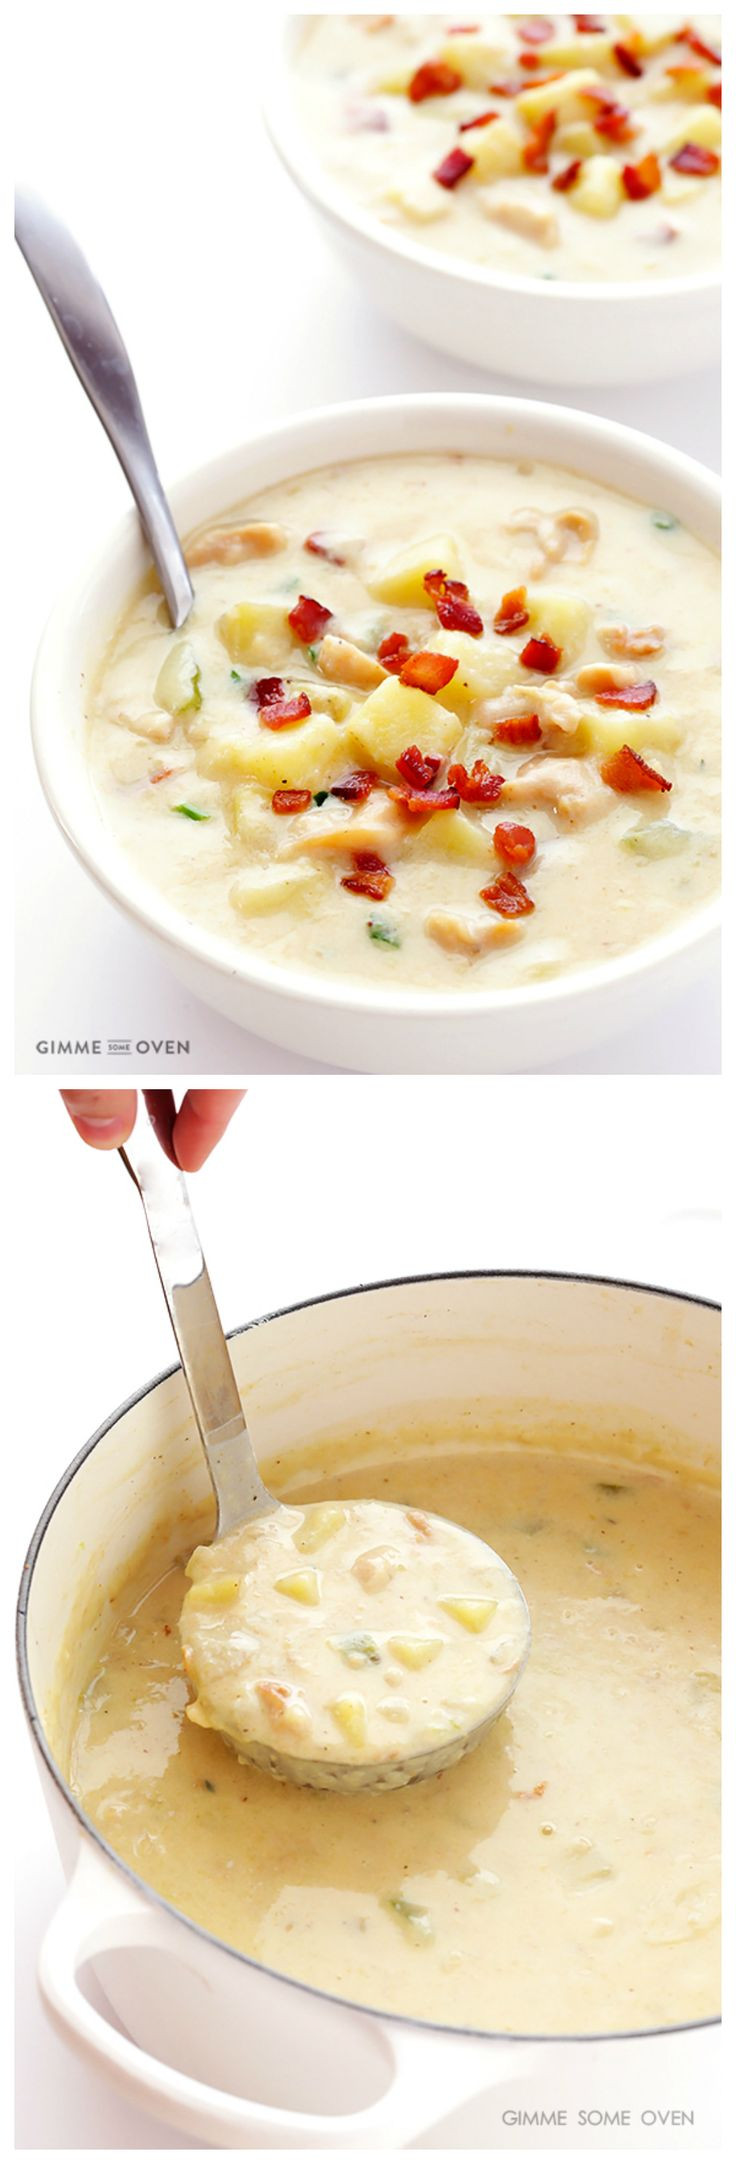 Healthy Clam Chowder Recipe
 Best 25 Clam chowder ideas on Pinterest